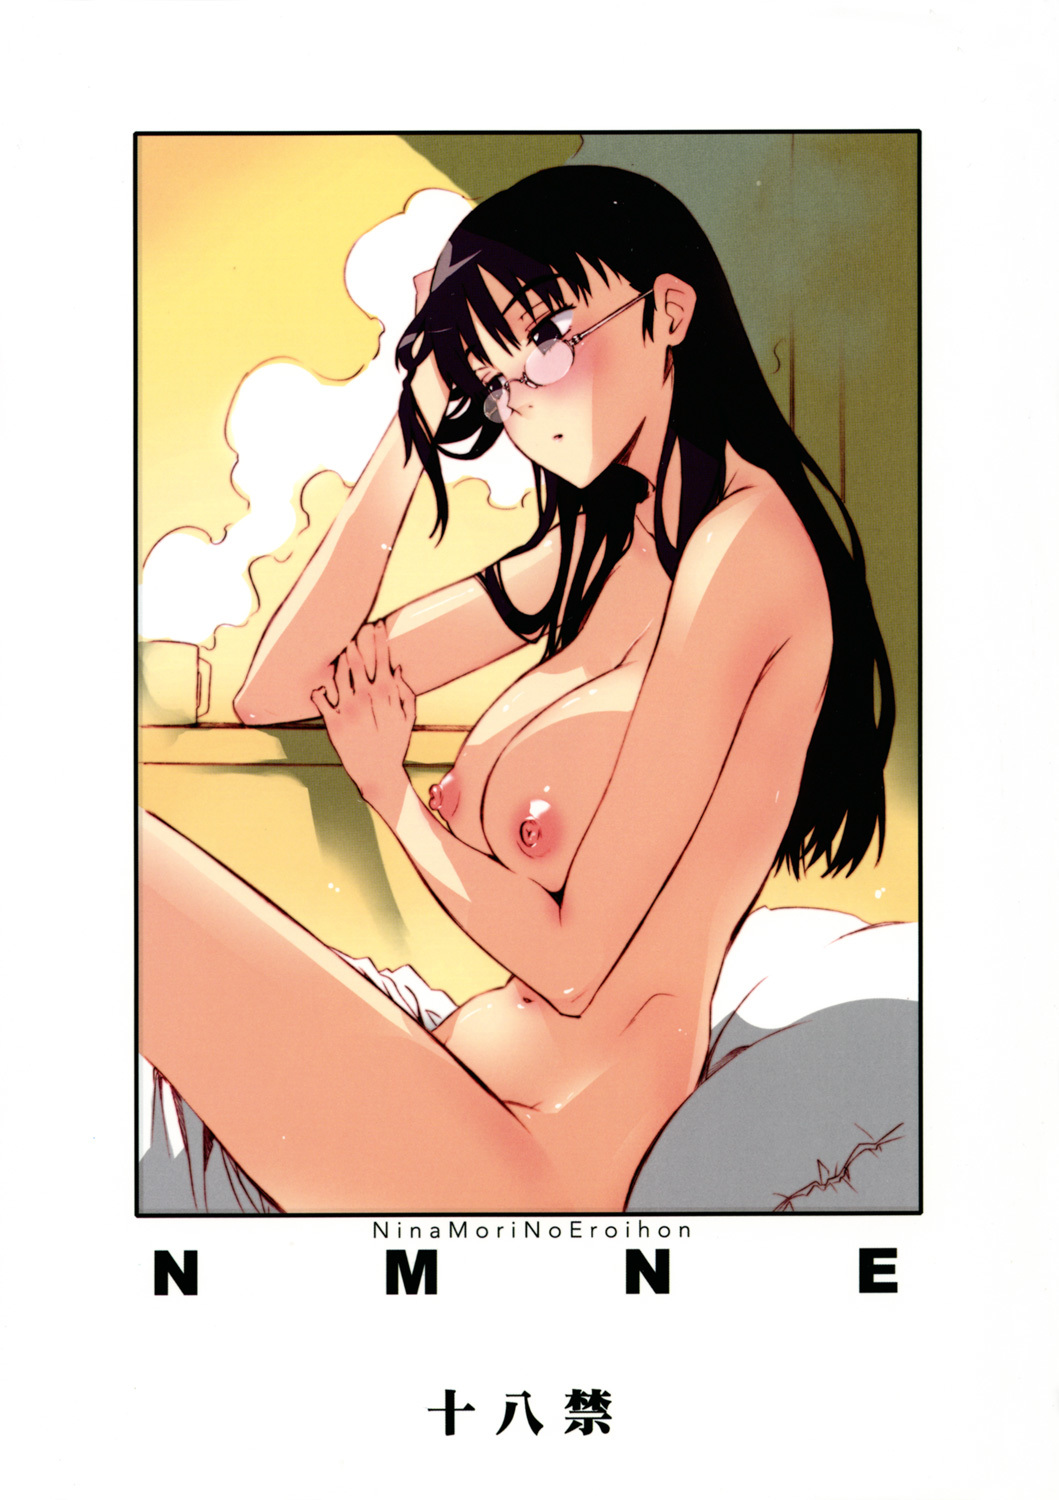 NMNE - Nina Mori No Eroihon flcl hentai manga